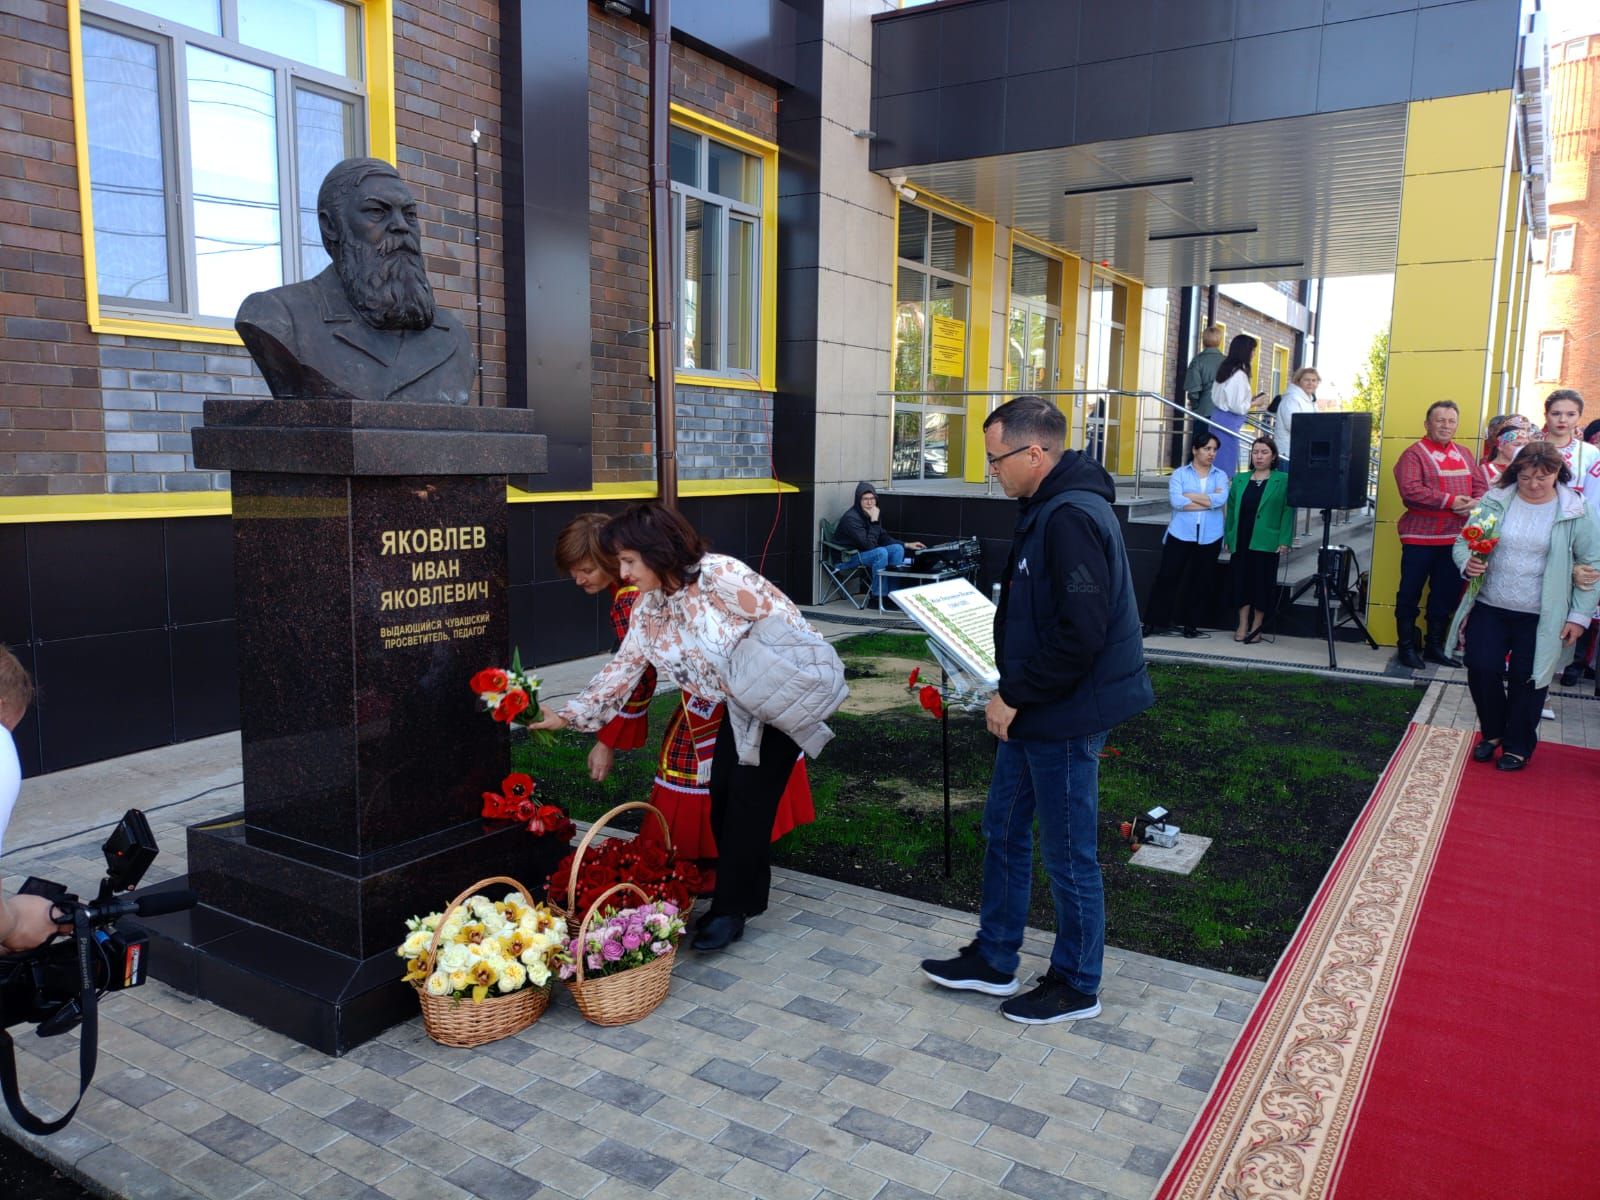 Сегодня в Буинске открыли памятник просветителю Ивану Яковлеву